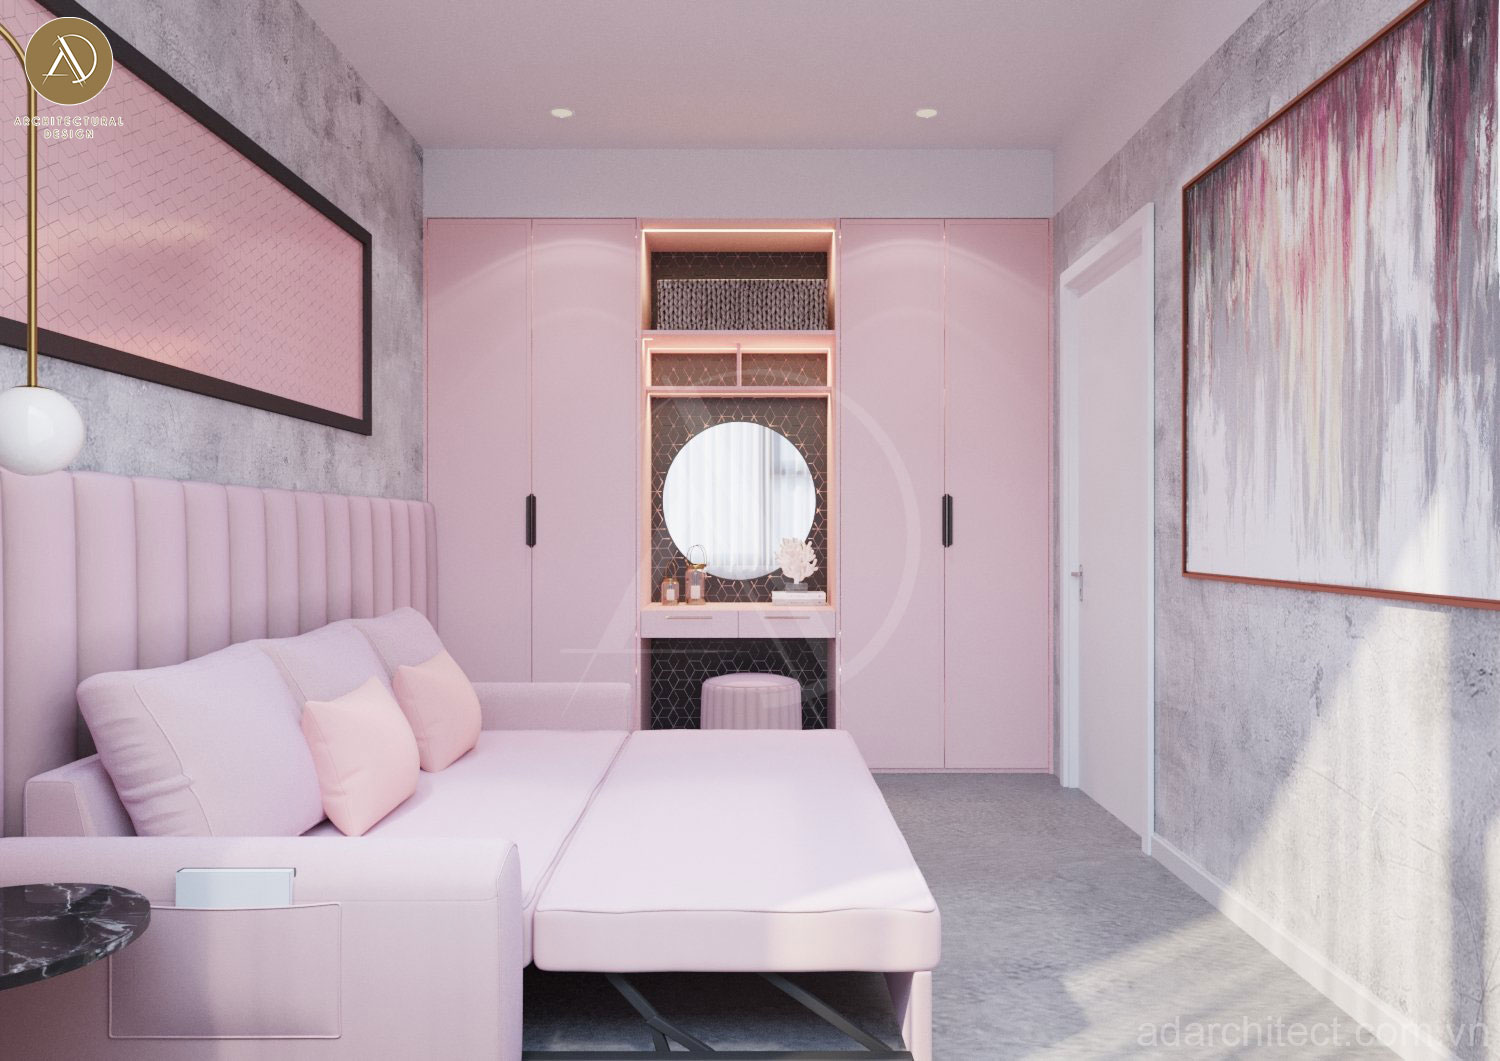 Thiết kế phòng studio có không gian phòng ngủ thuận tiện trong việc nghỉ ngơi cho nhân viên